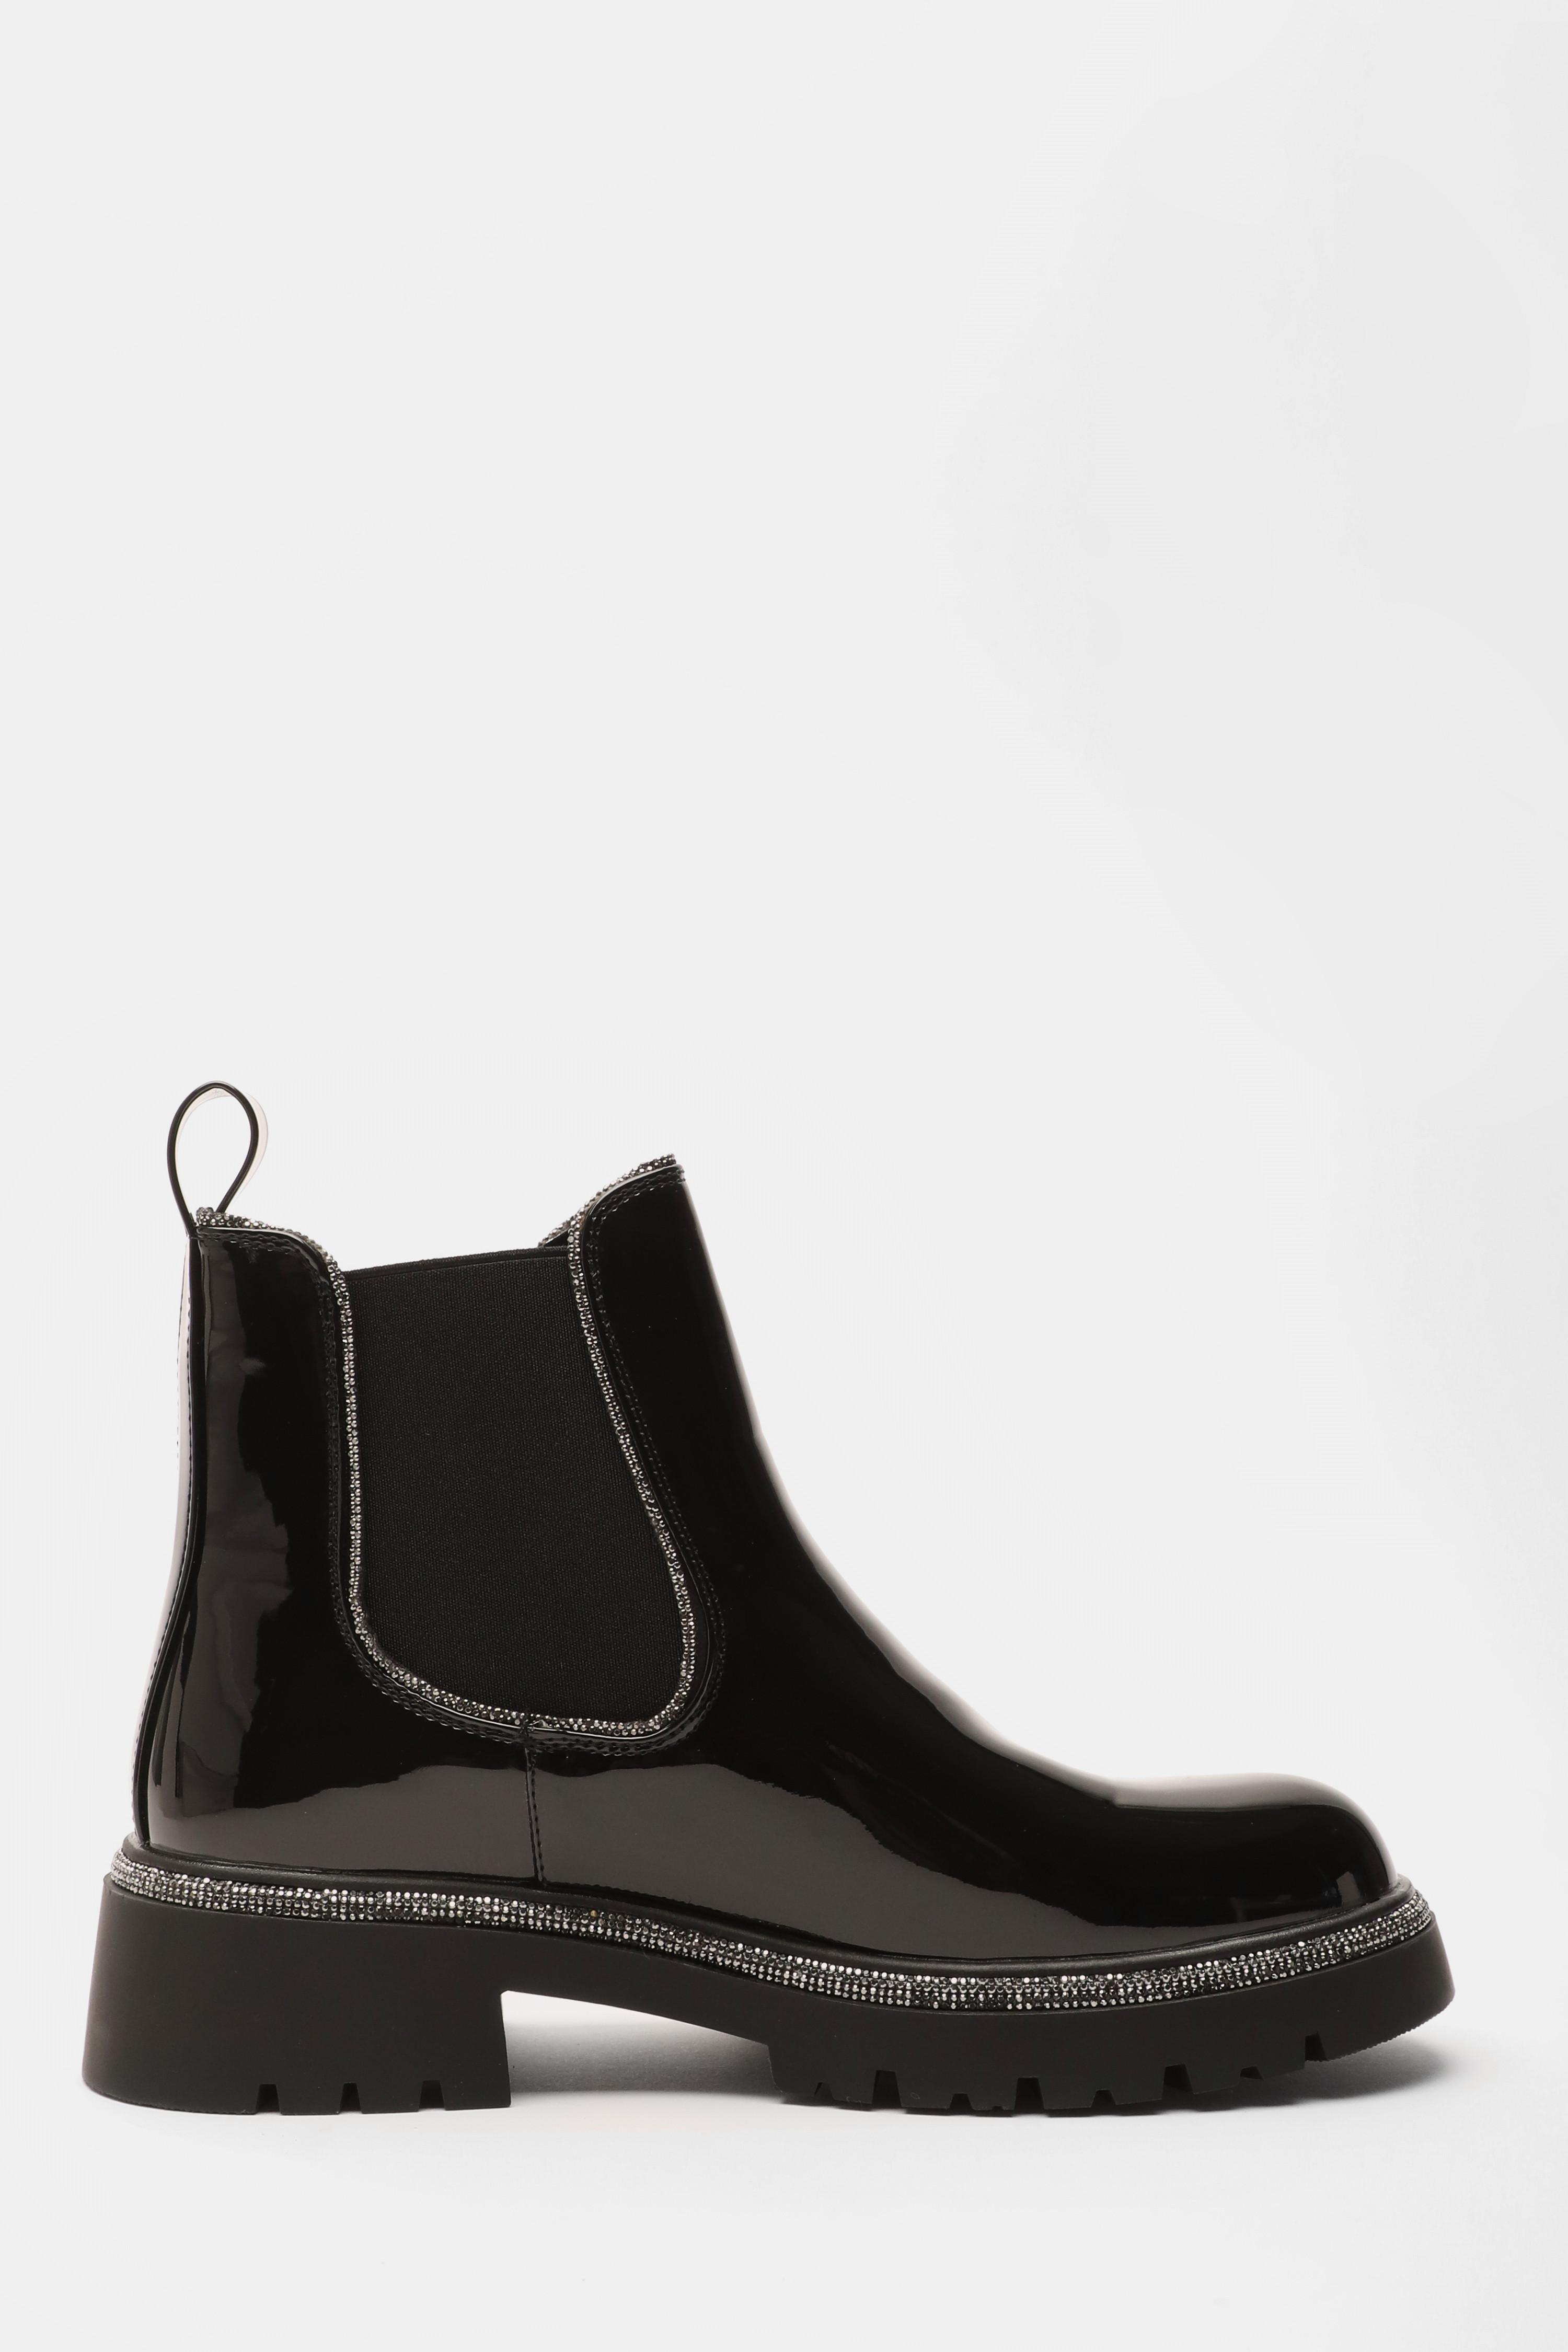 Black Patent Faux Leather Chelsea Boots<!-- --> - <!-- -->QUIZ